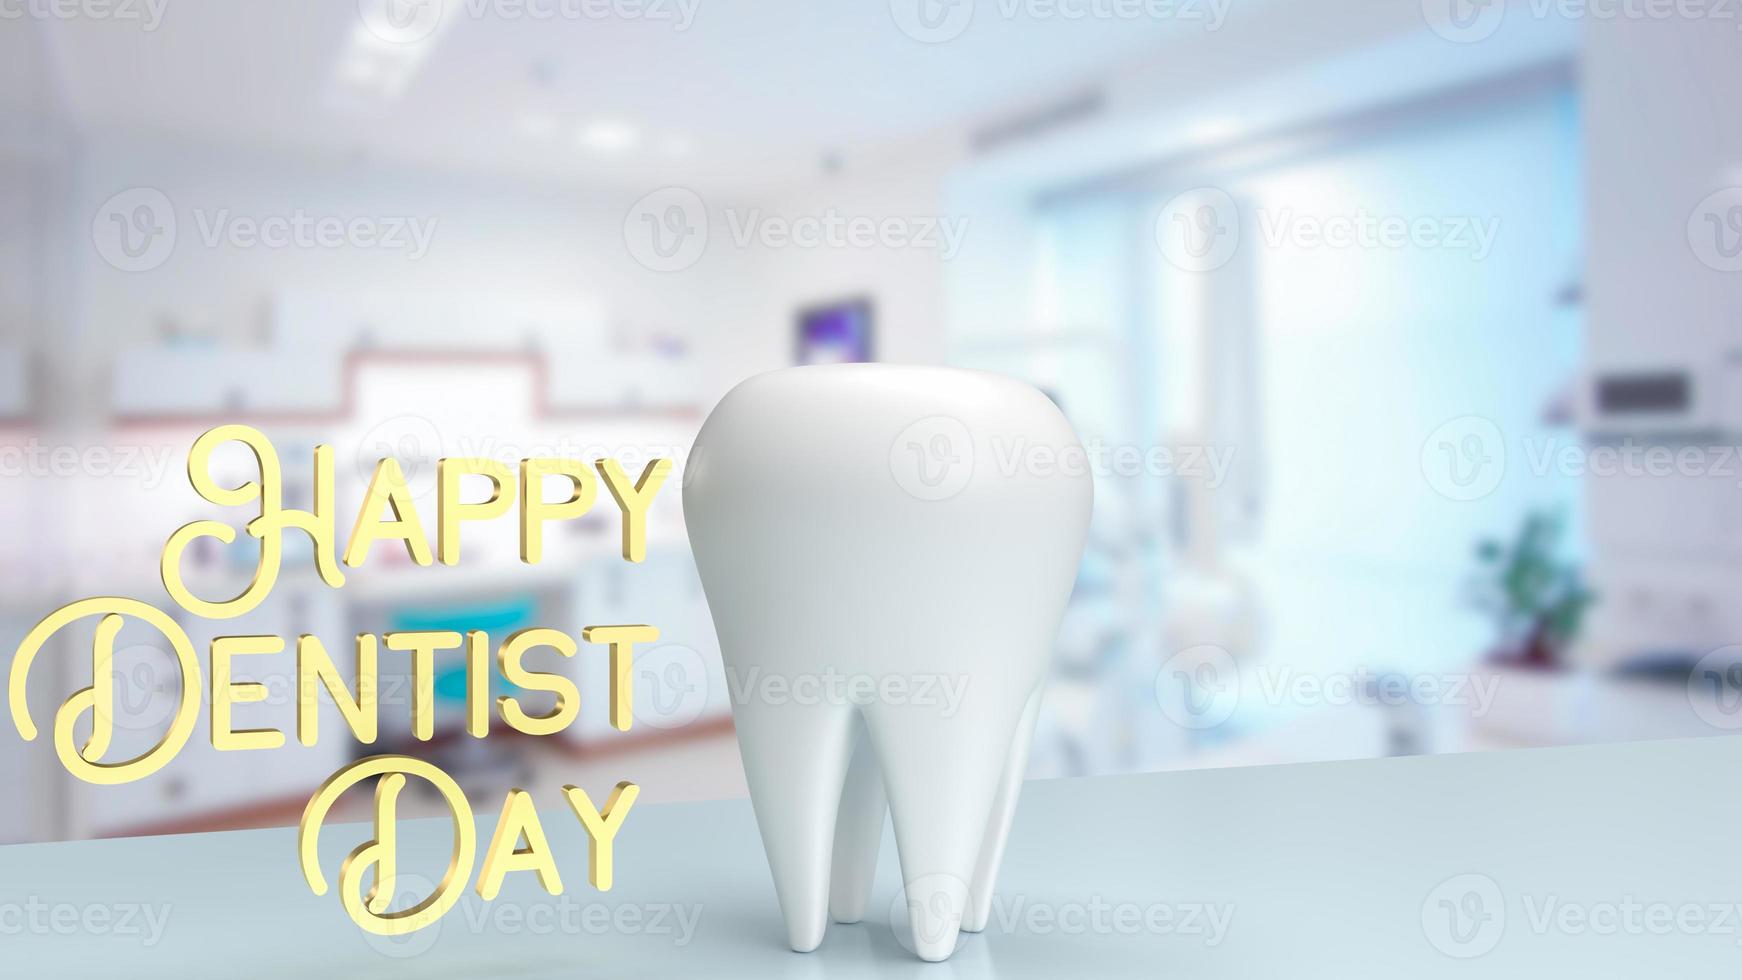 el diente blanco en la clínica del dentista para la representación 3d del concepto médico o de salud foto